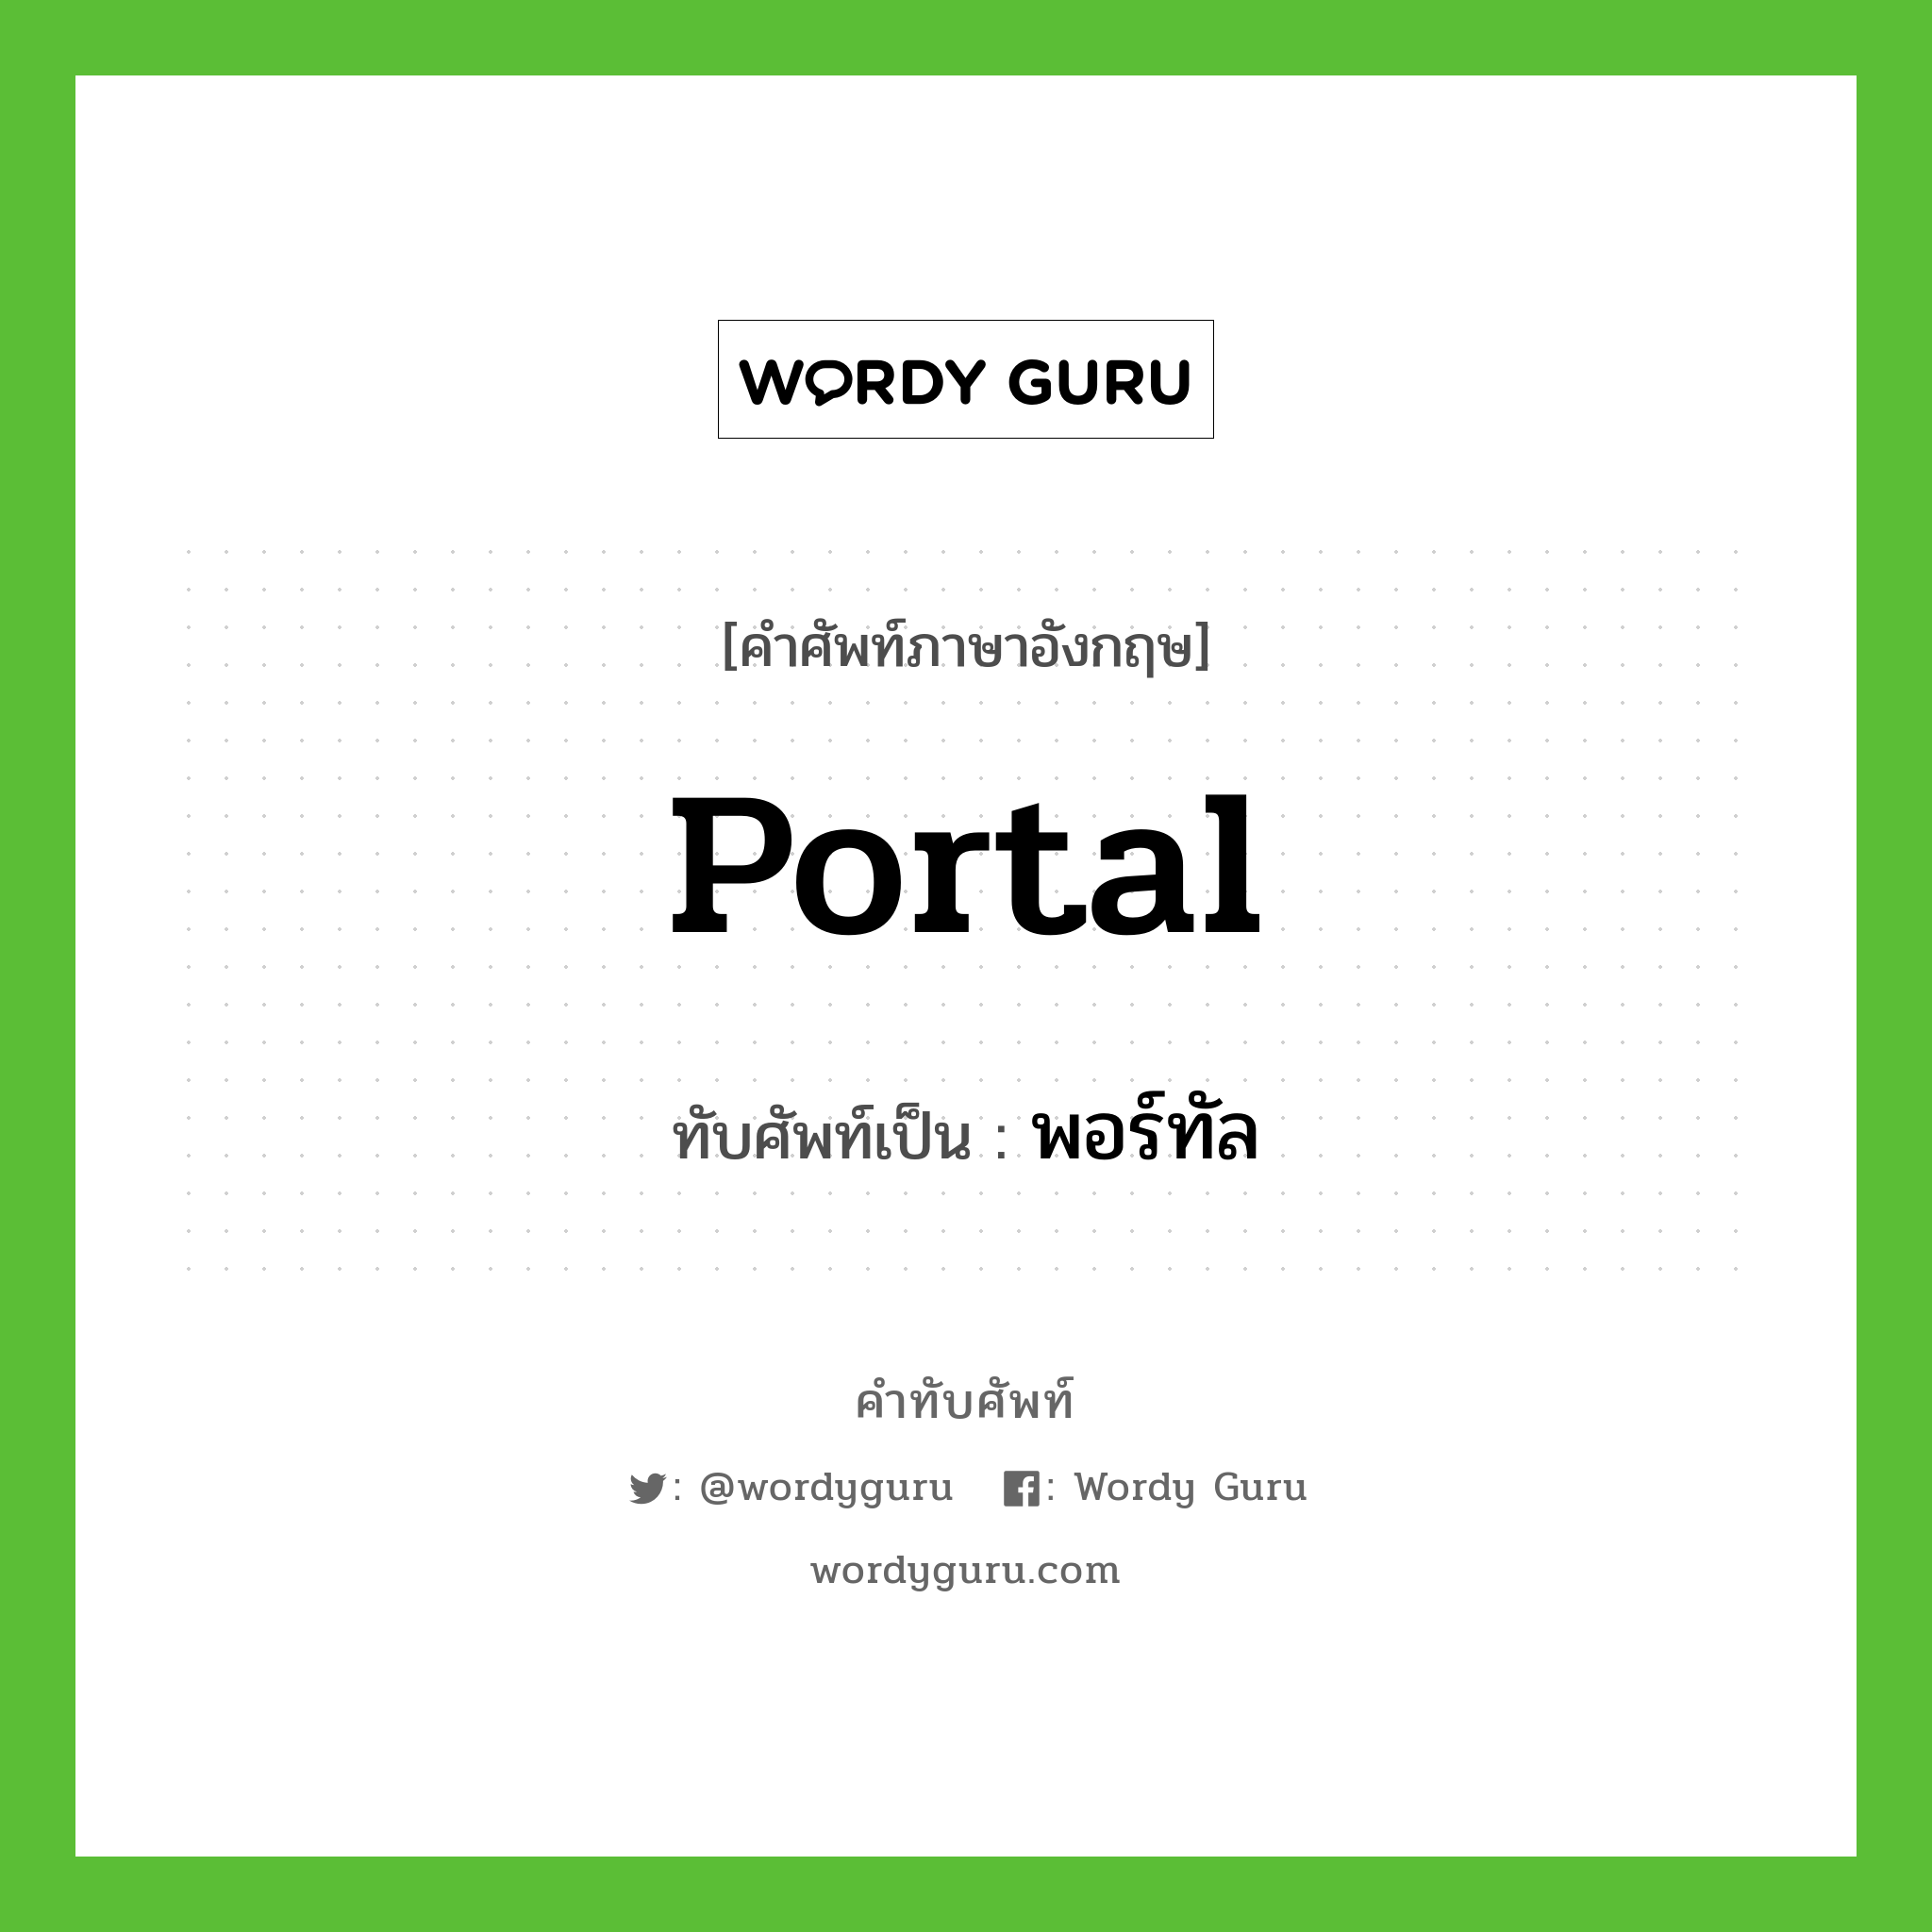 พอร์ทัล เขียนอย่างไร?, คำศัพท์ภาษาอังกฤษ พอร์ทัล ทับศัพท์เป็น portal